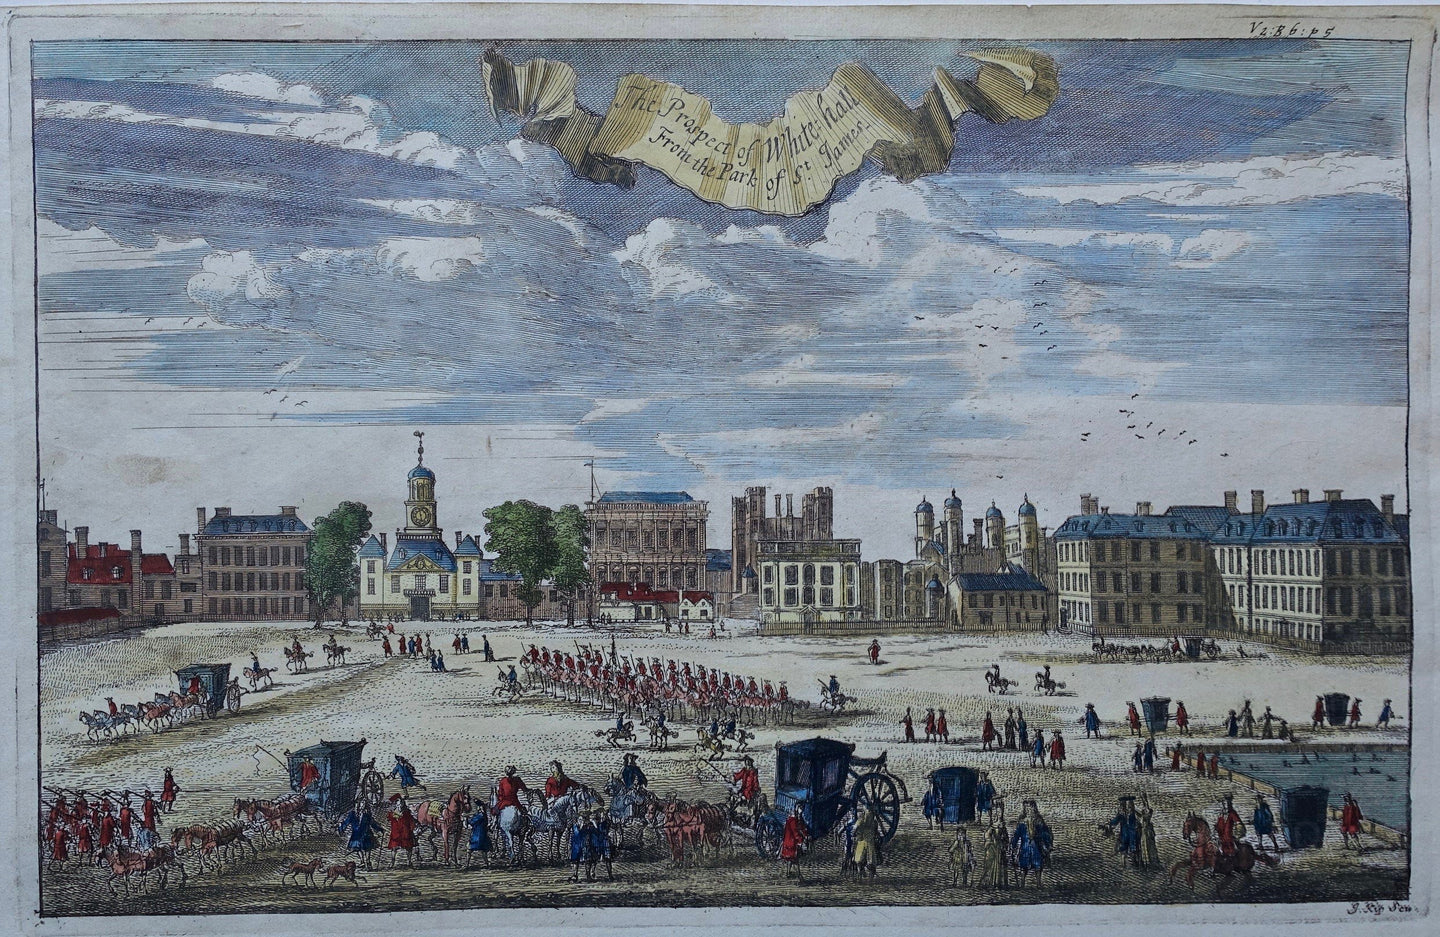 Britse Eilanden Londen Whitehall British Isles London - J Kip - 1720